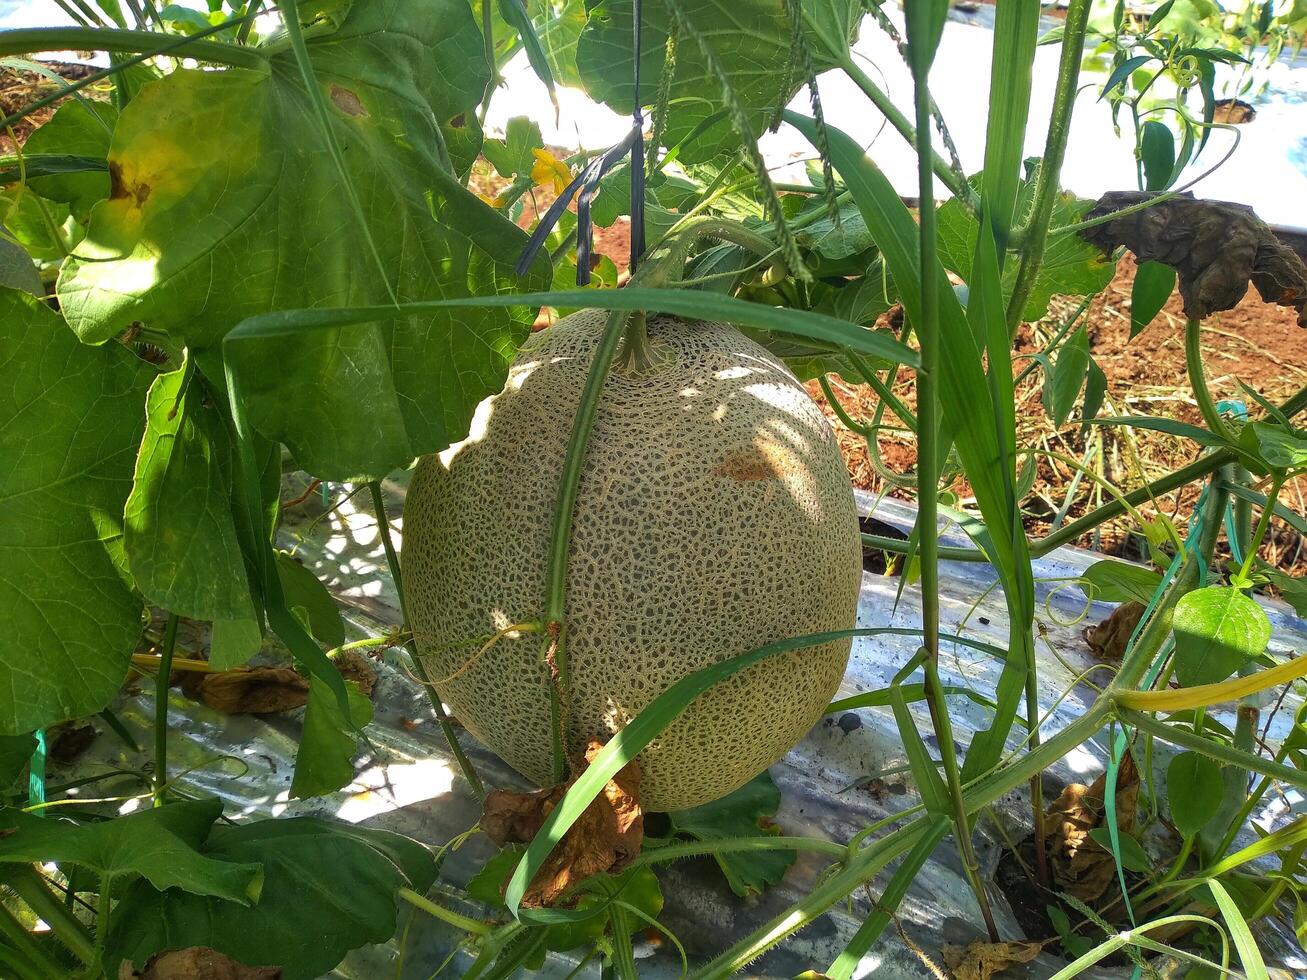 Frais melons ou vert melons ou cantaloup melons les plantes croissance dans serre prise en charge par chaîne melon filets. photo